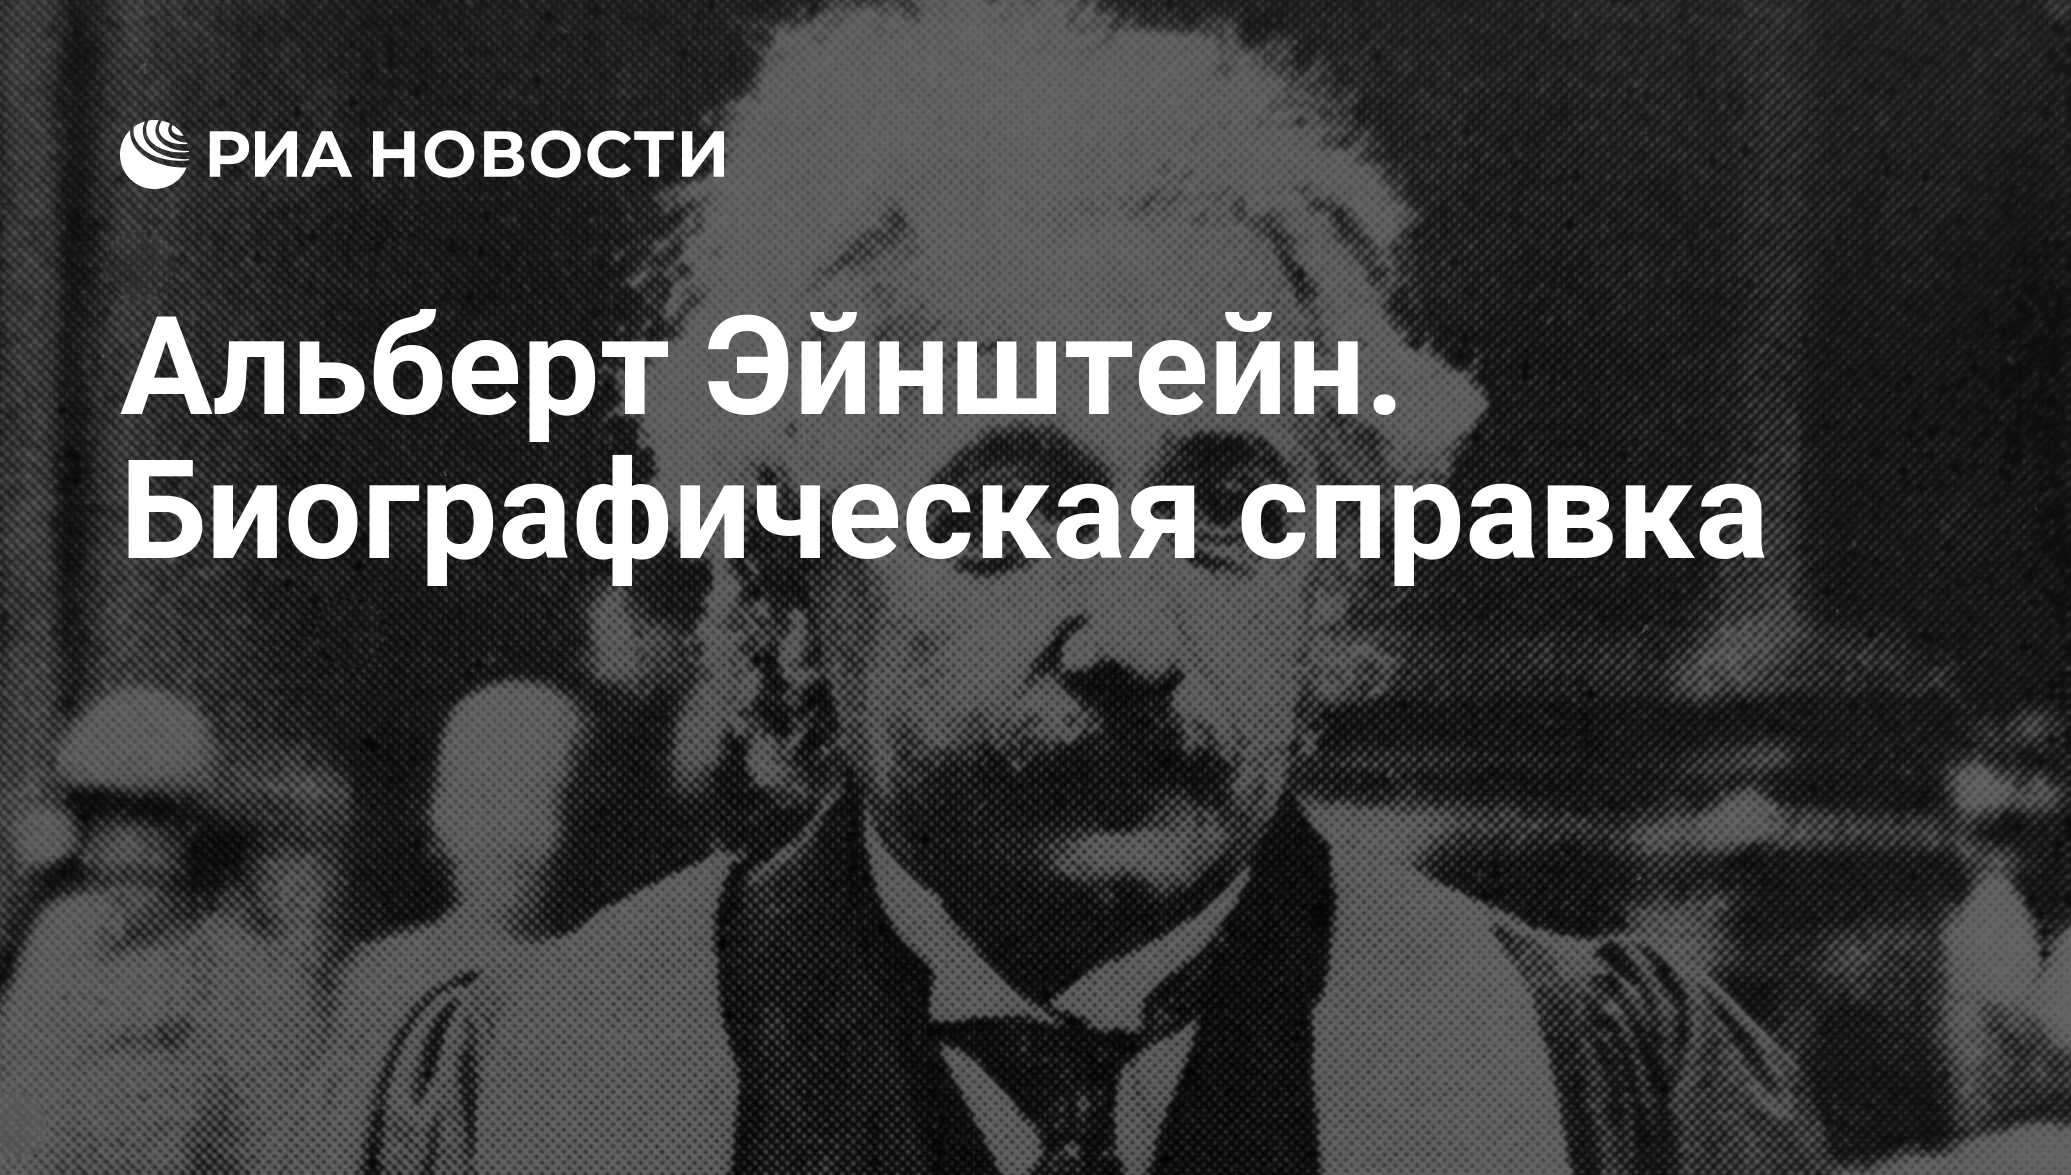 Альберт Эйнштейн. Биографическая справка - РИА Новости, 13.03.2009